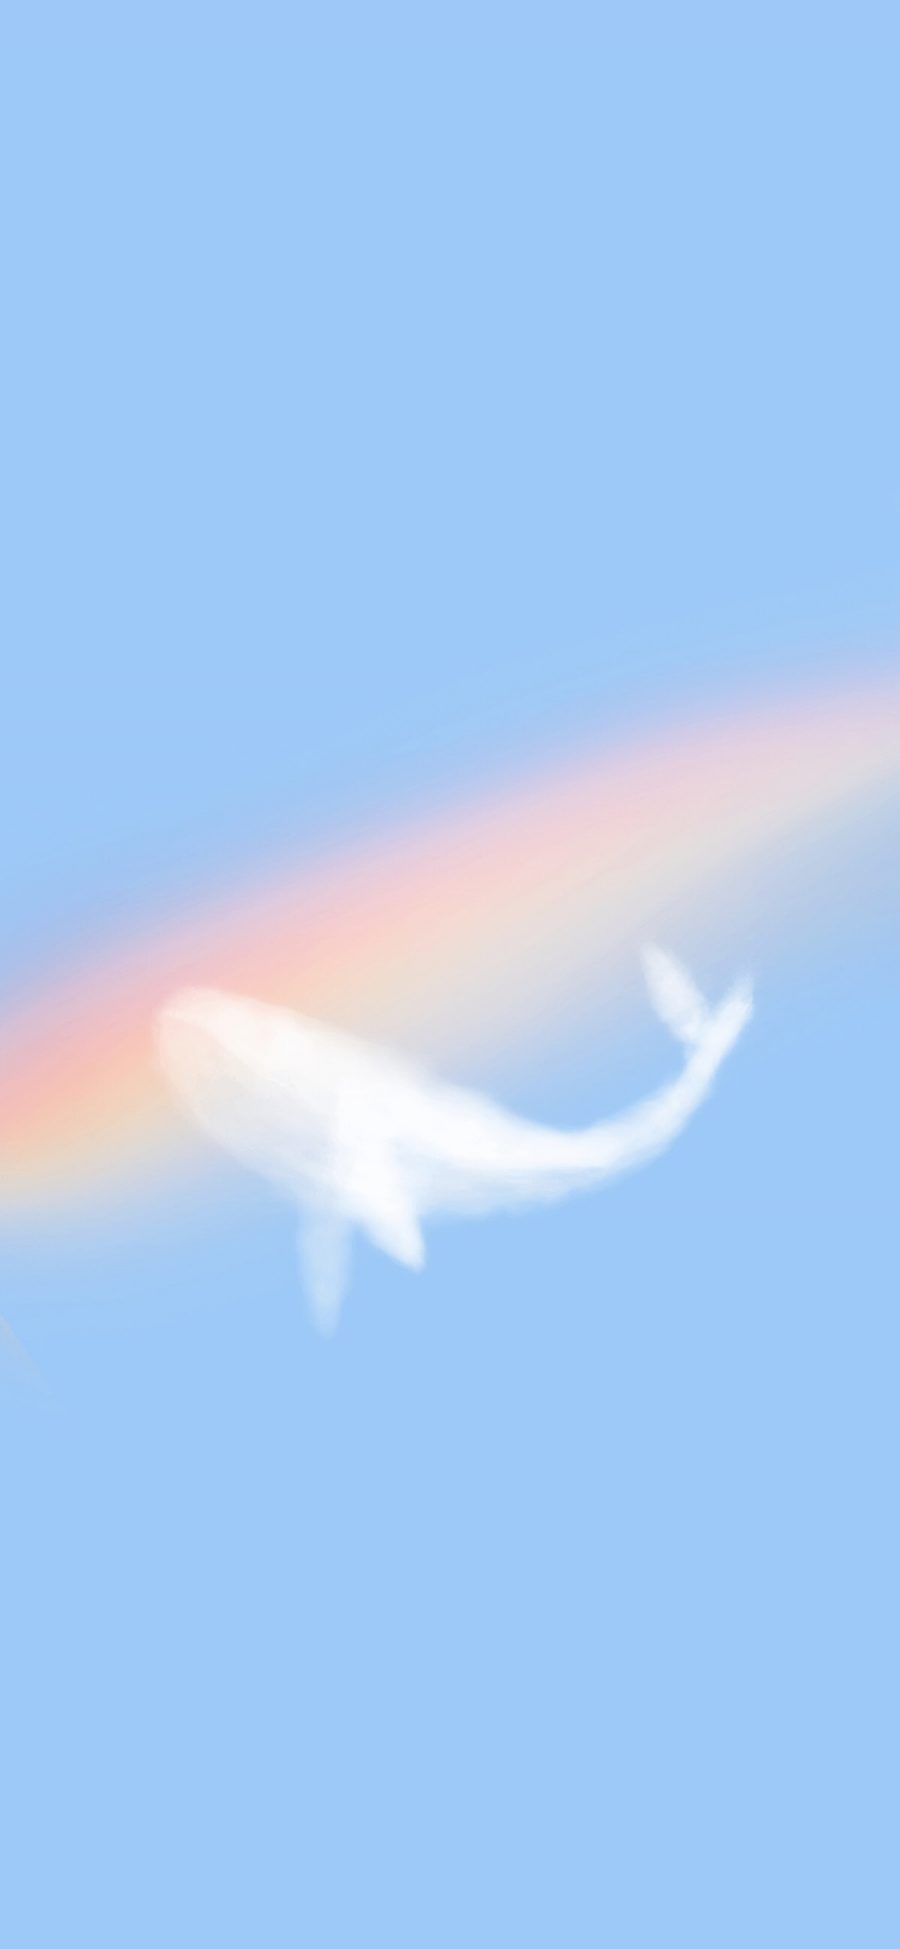 [2436×1125]插图 彩虹 鲸鱼 云 苹果手机动漫壁纸图片